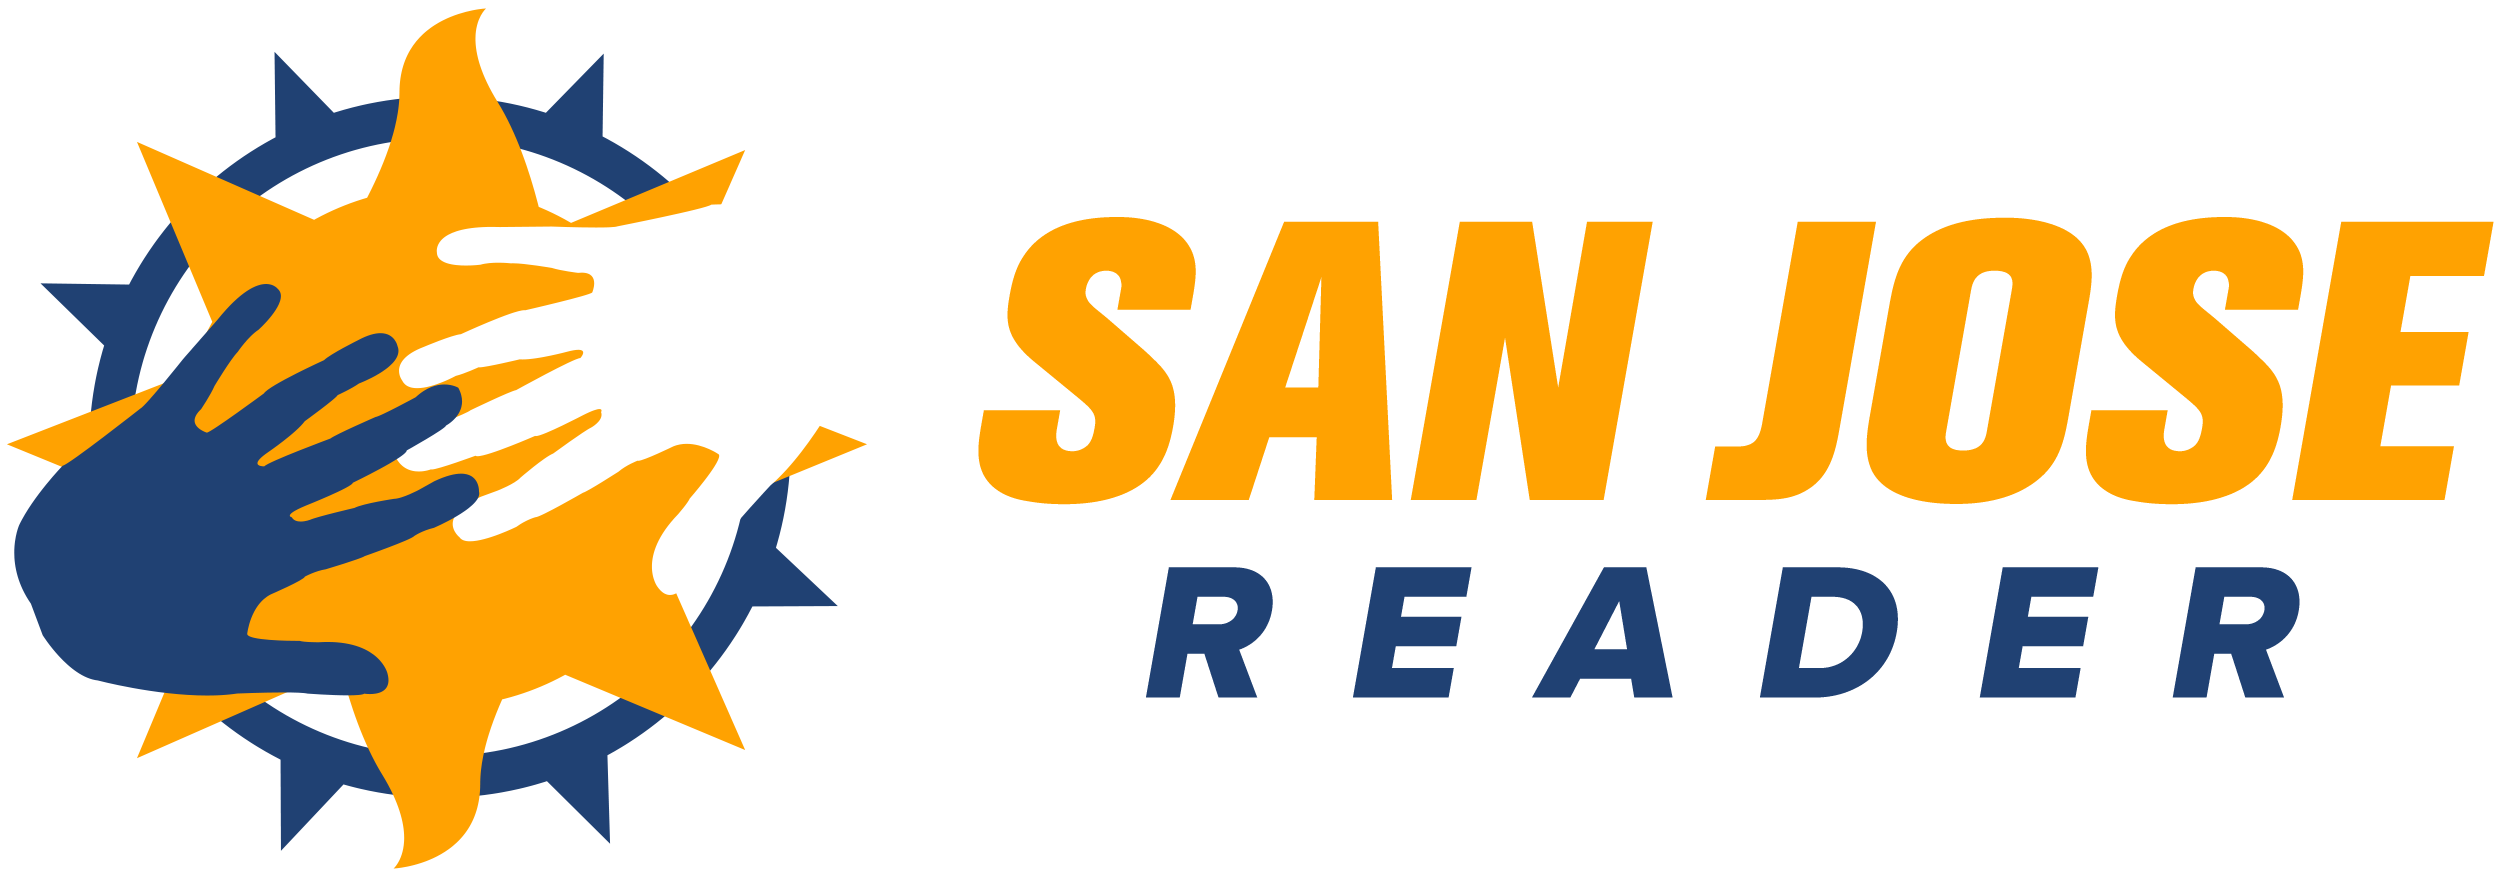 San Jose Reader